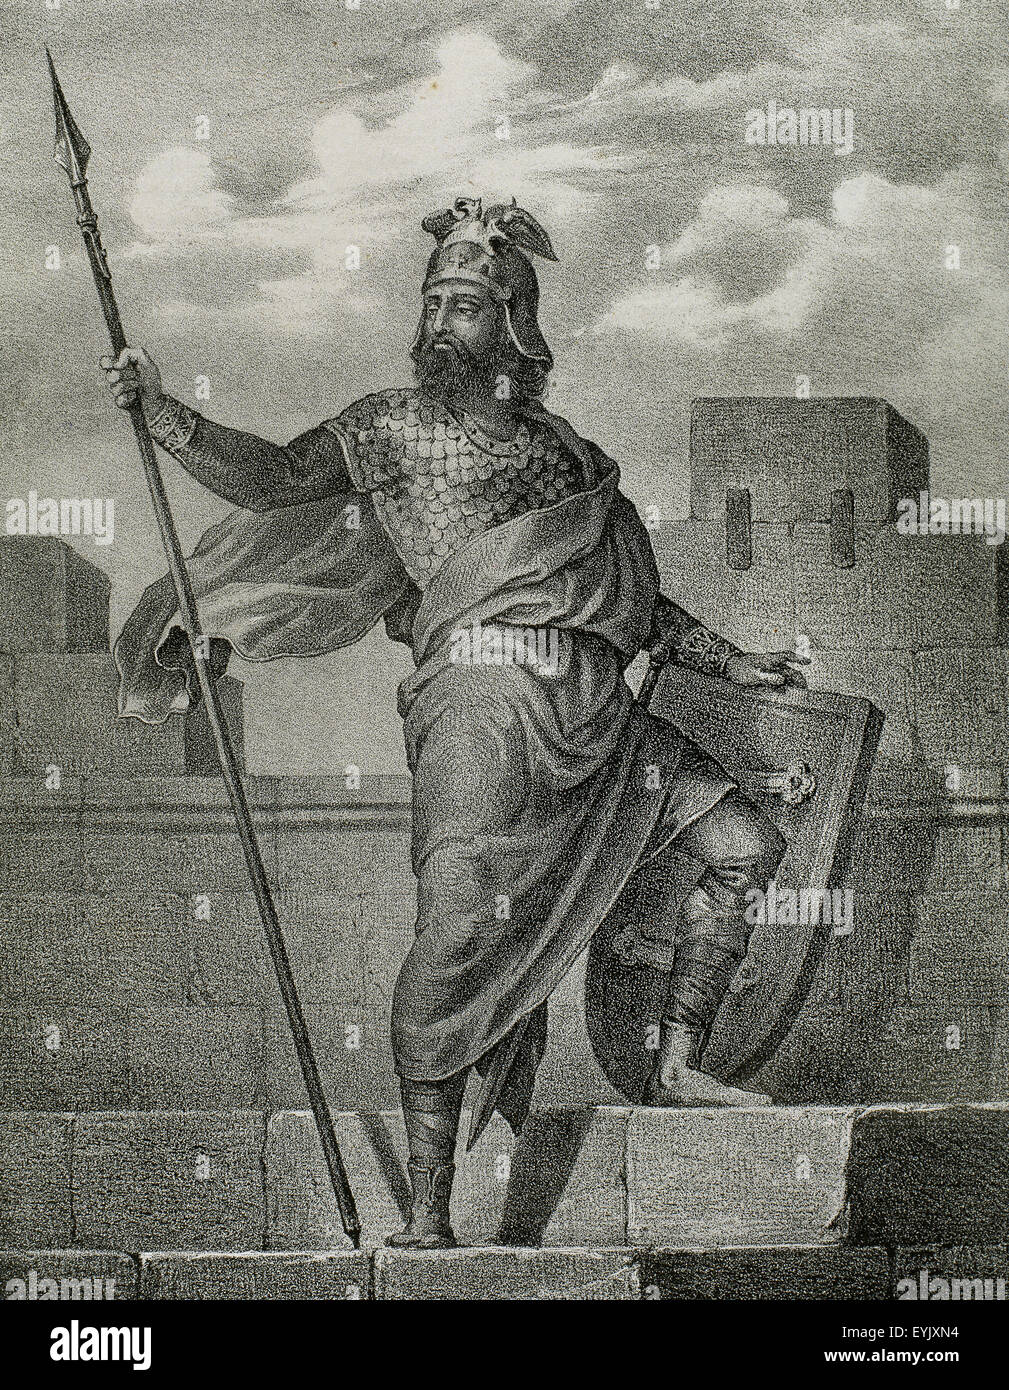 Alfonso II d'Aragona chiamato Casto (1154-1196). Il re del regno di Aragona. Incisione in Spagna Storia illustrata del XIX secolo. Foto Stock